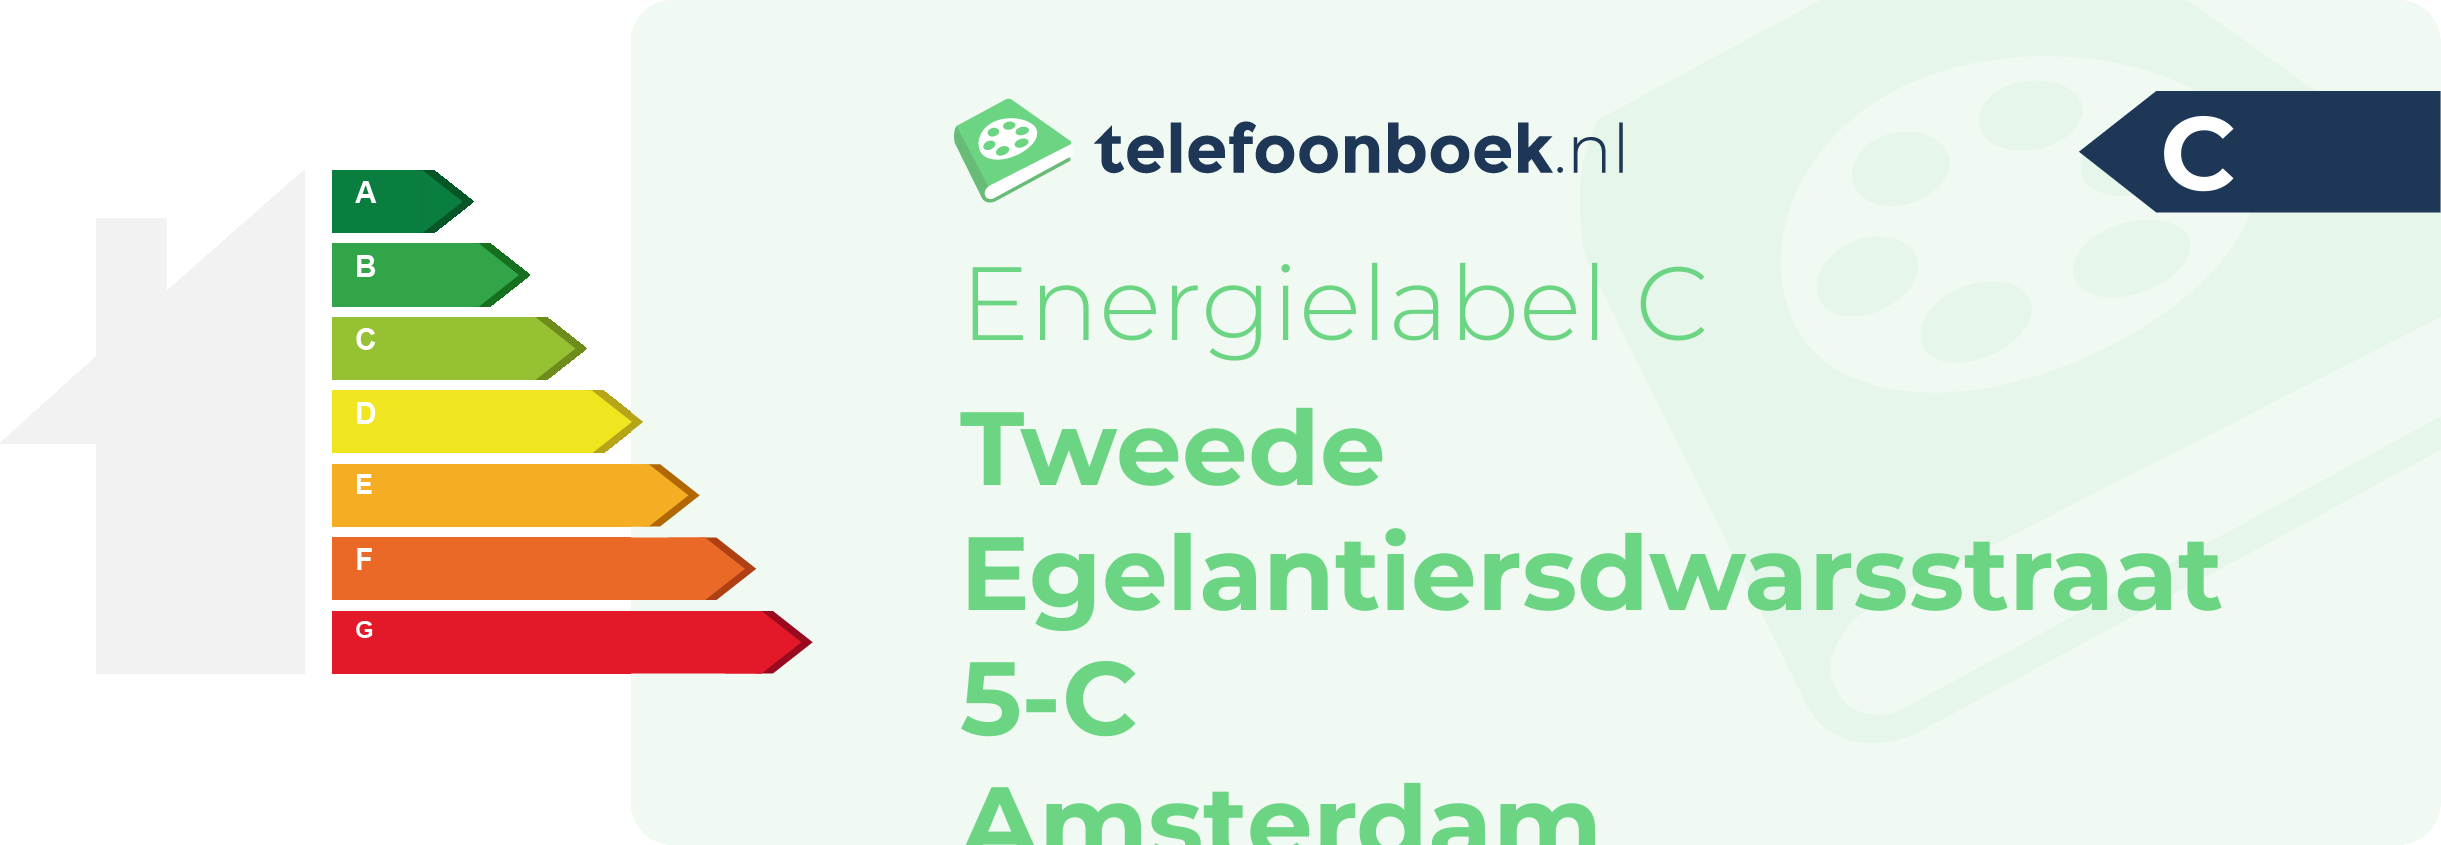 Energielabel Tweede Egelantiersdwarsstraat 5-C Amsterdam